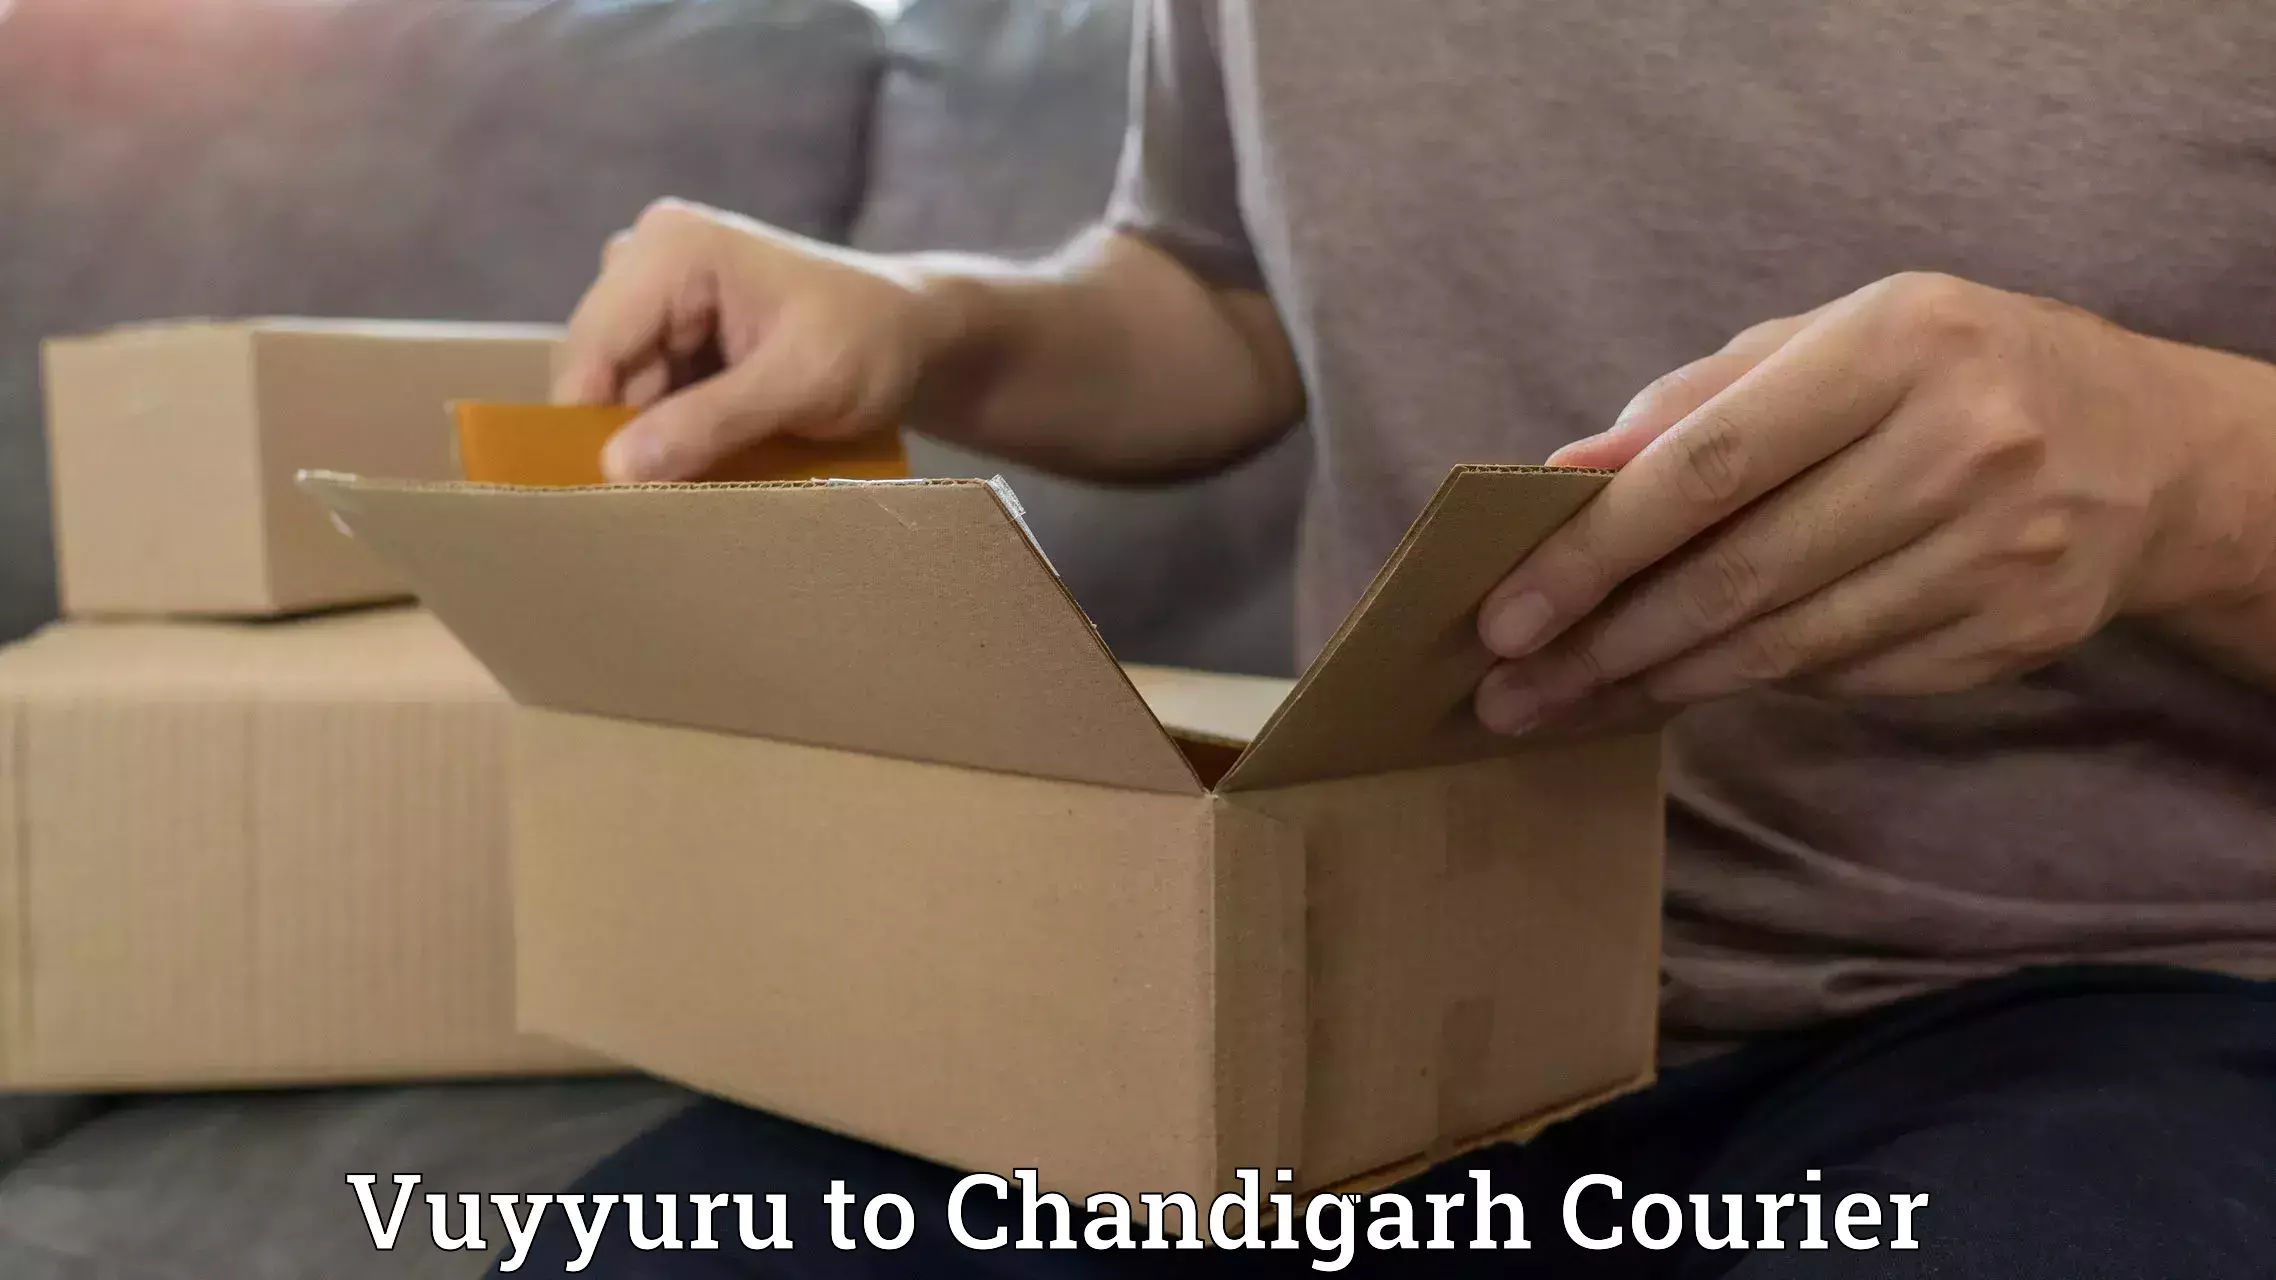 Efficient freight service Vuyyuru to Chandigarh